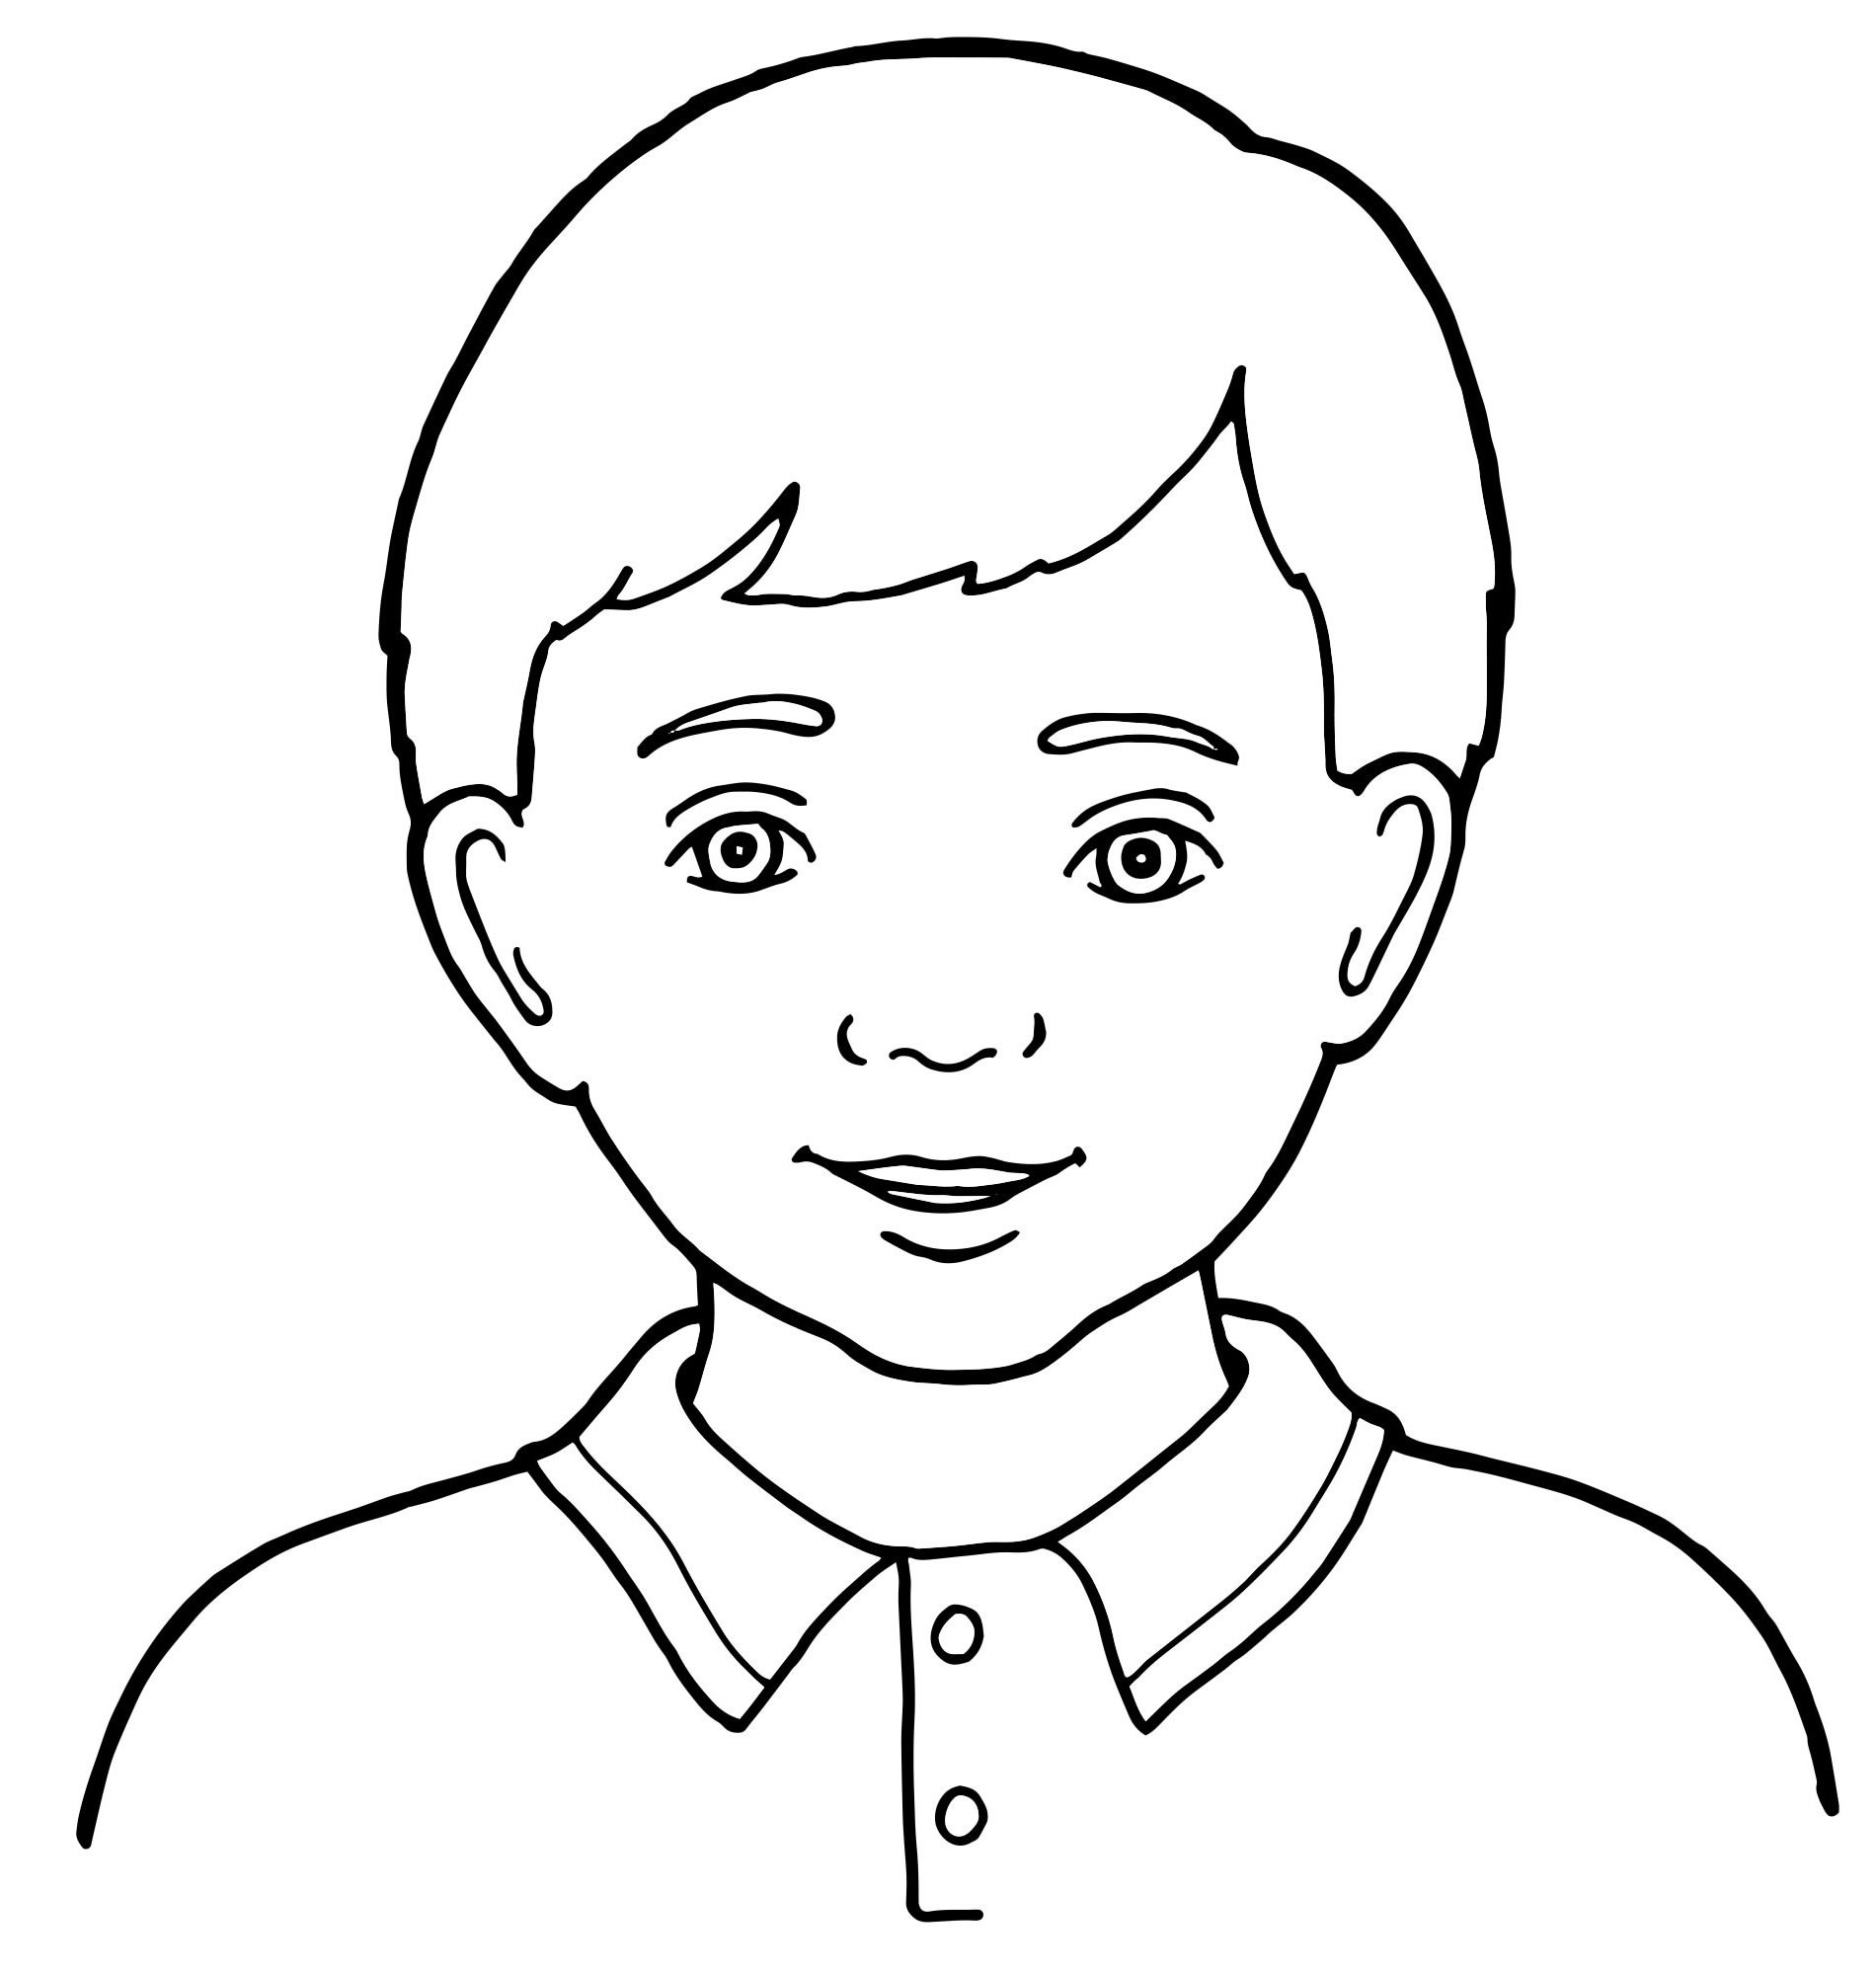 Рисунок лица 1 3. Портрет мальчика карандашом. Портрет человека рисунок для детей. Лицо мальчика раскраска для детей. Раскраска портрет мальчика.